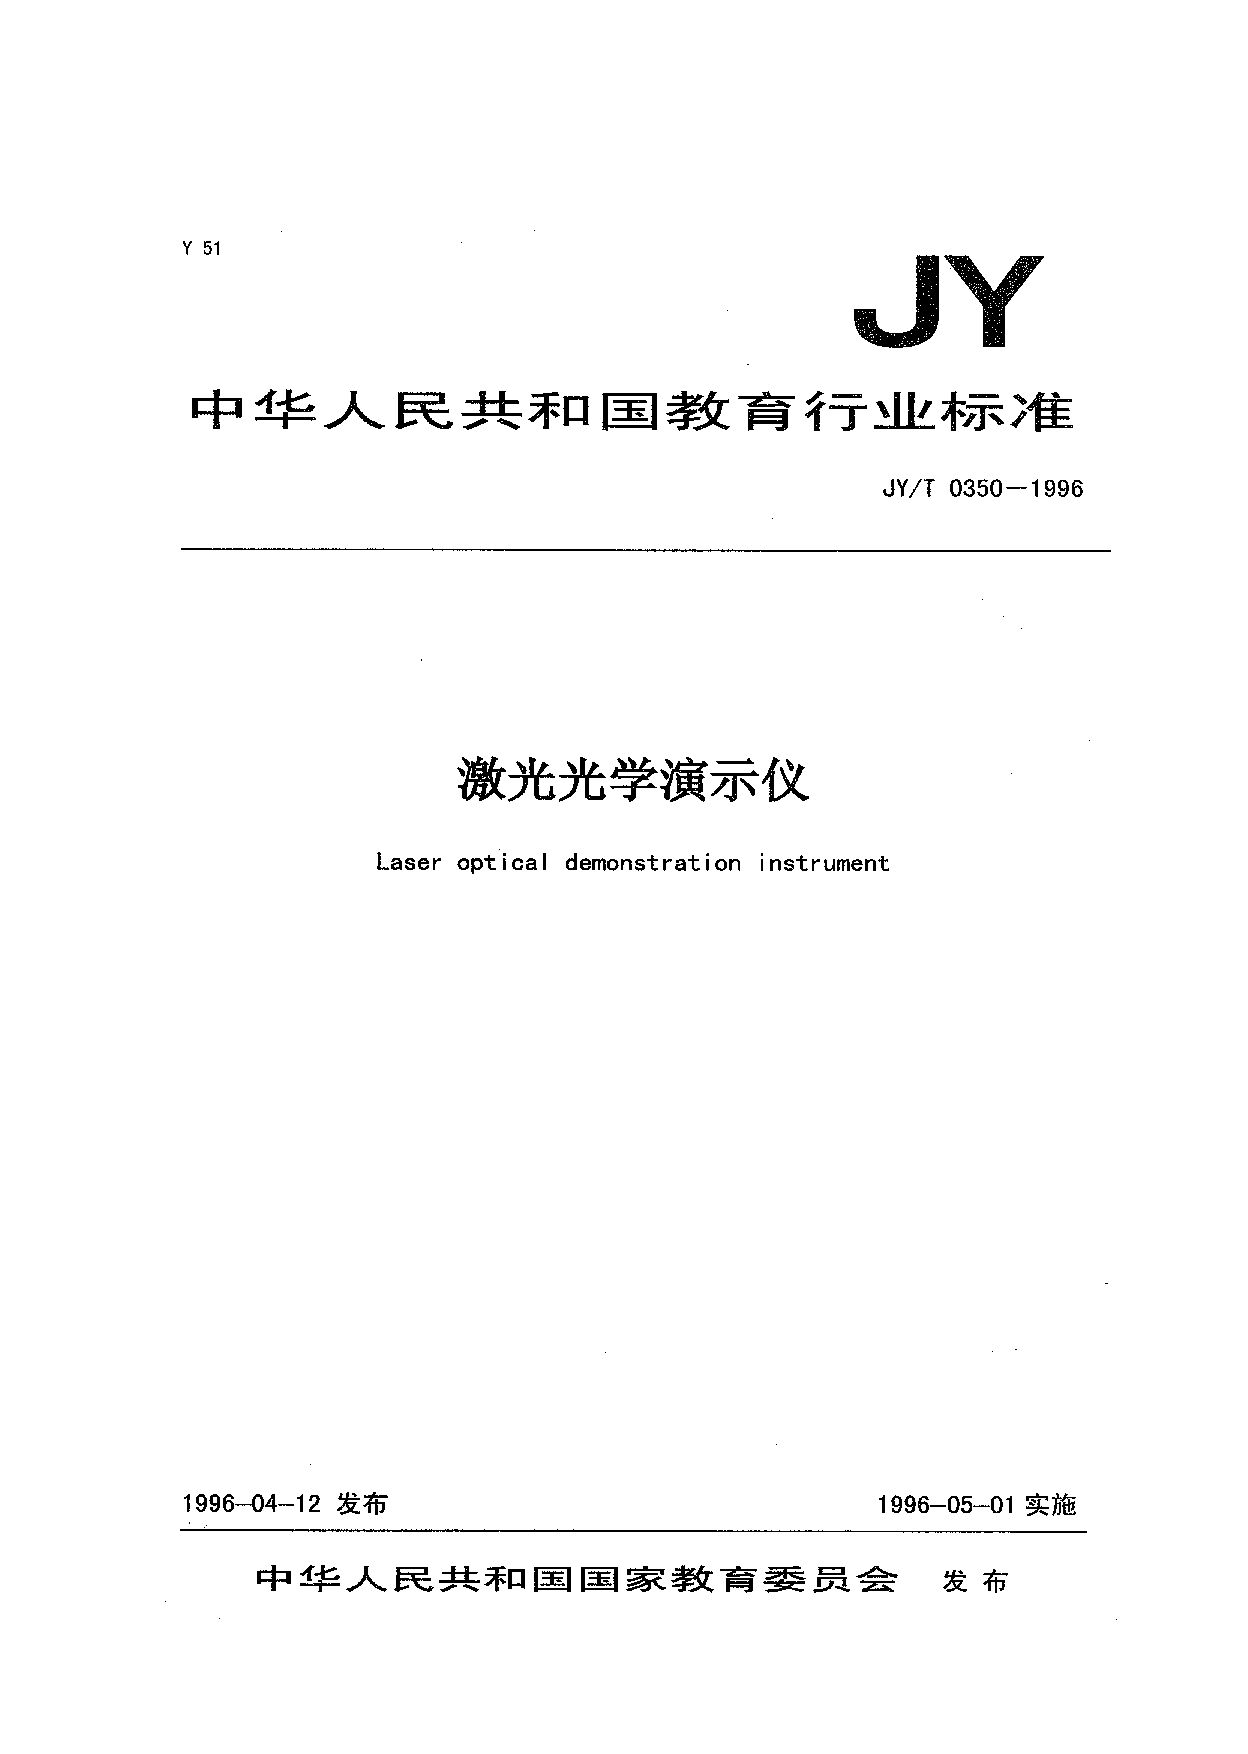 JY/T 0350-1996封面图